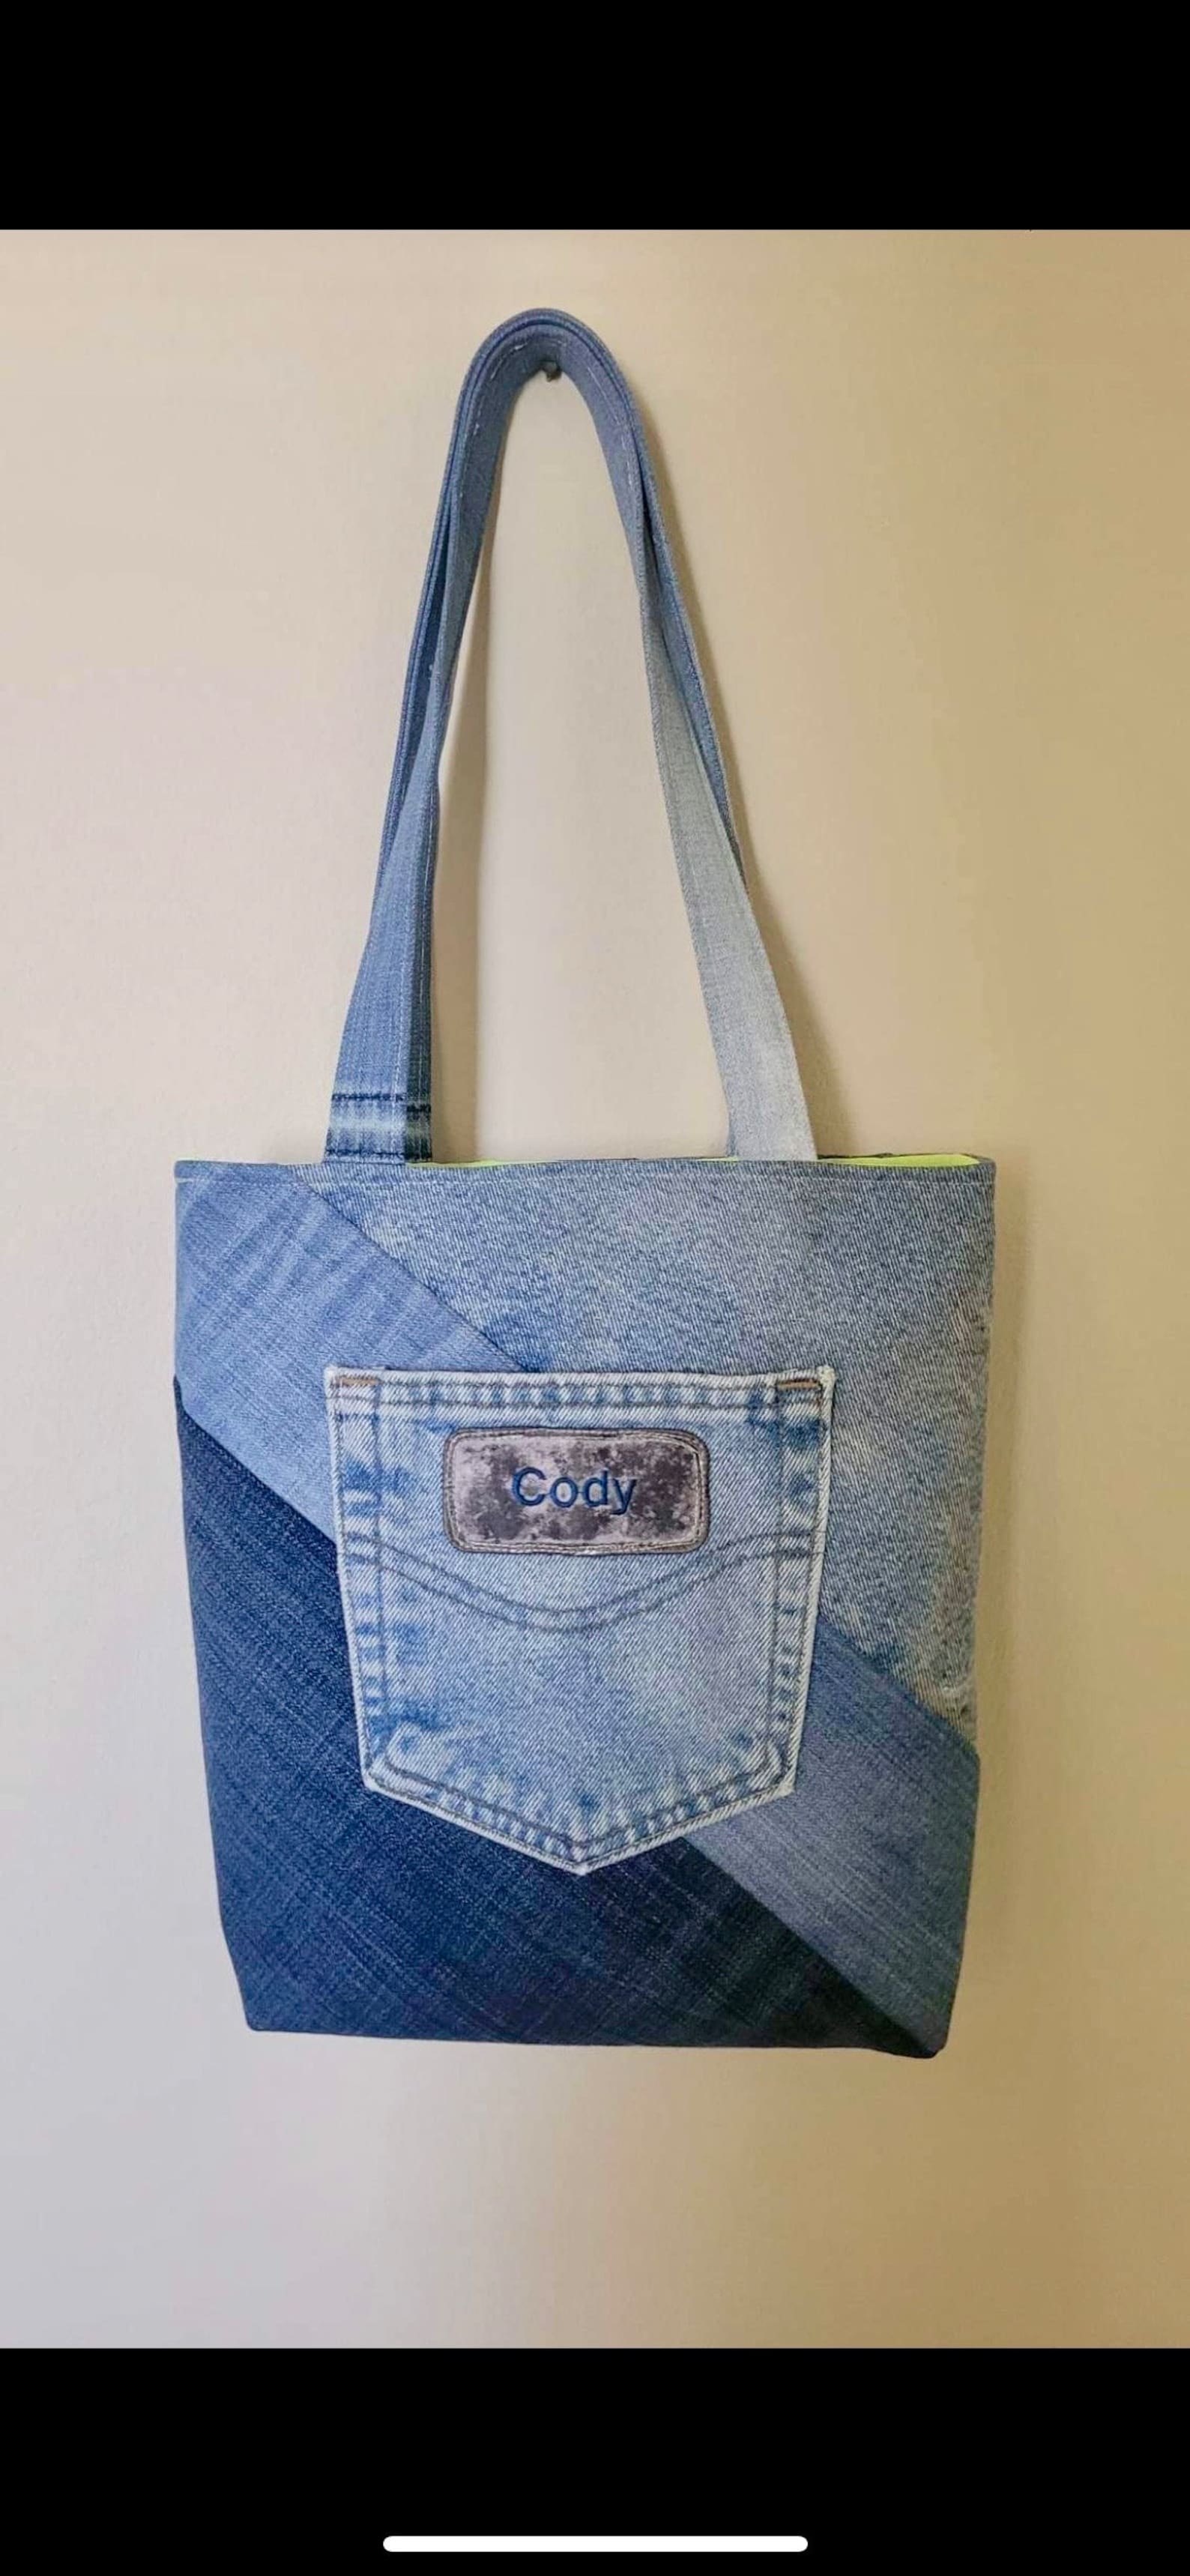 Multicolored Denim Shoulder Handbag, Recycled Denim Bag, Upcycled Jeans ...